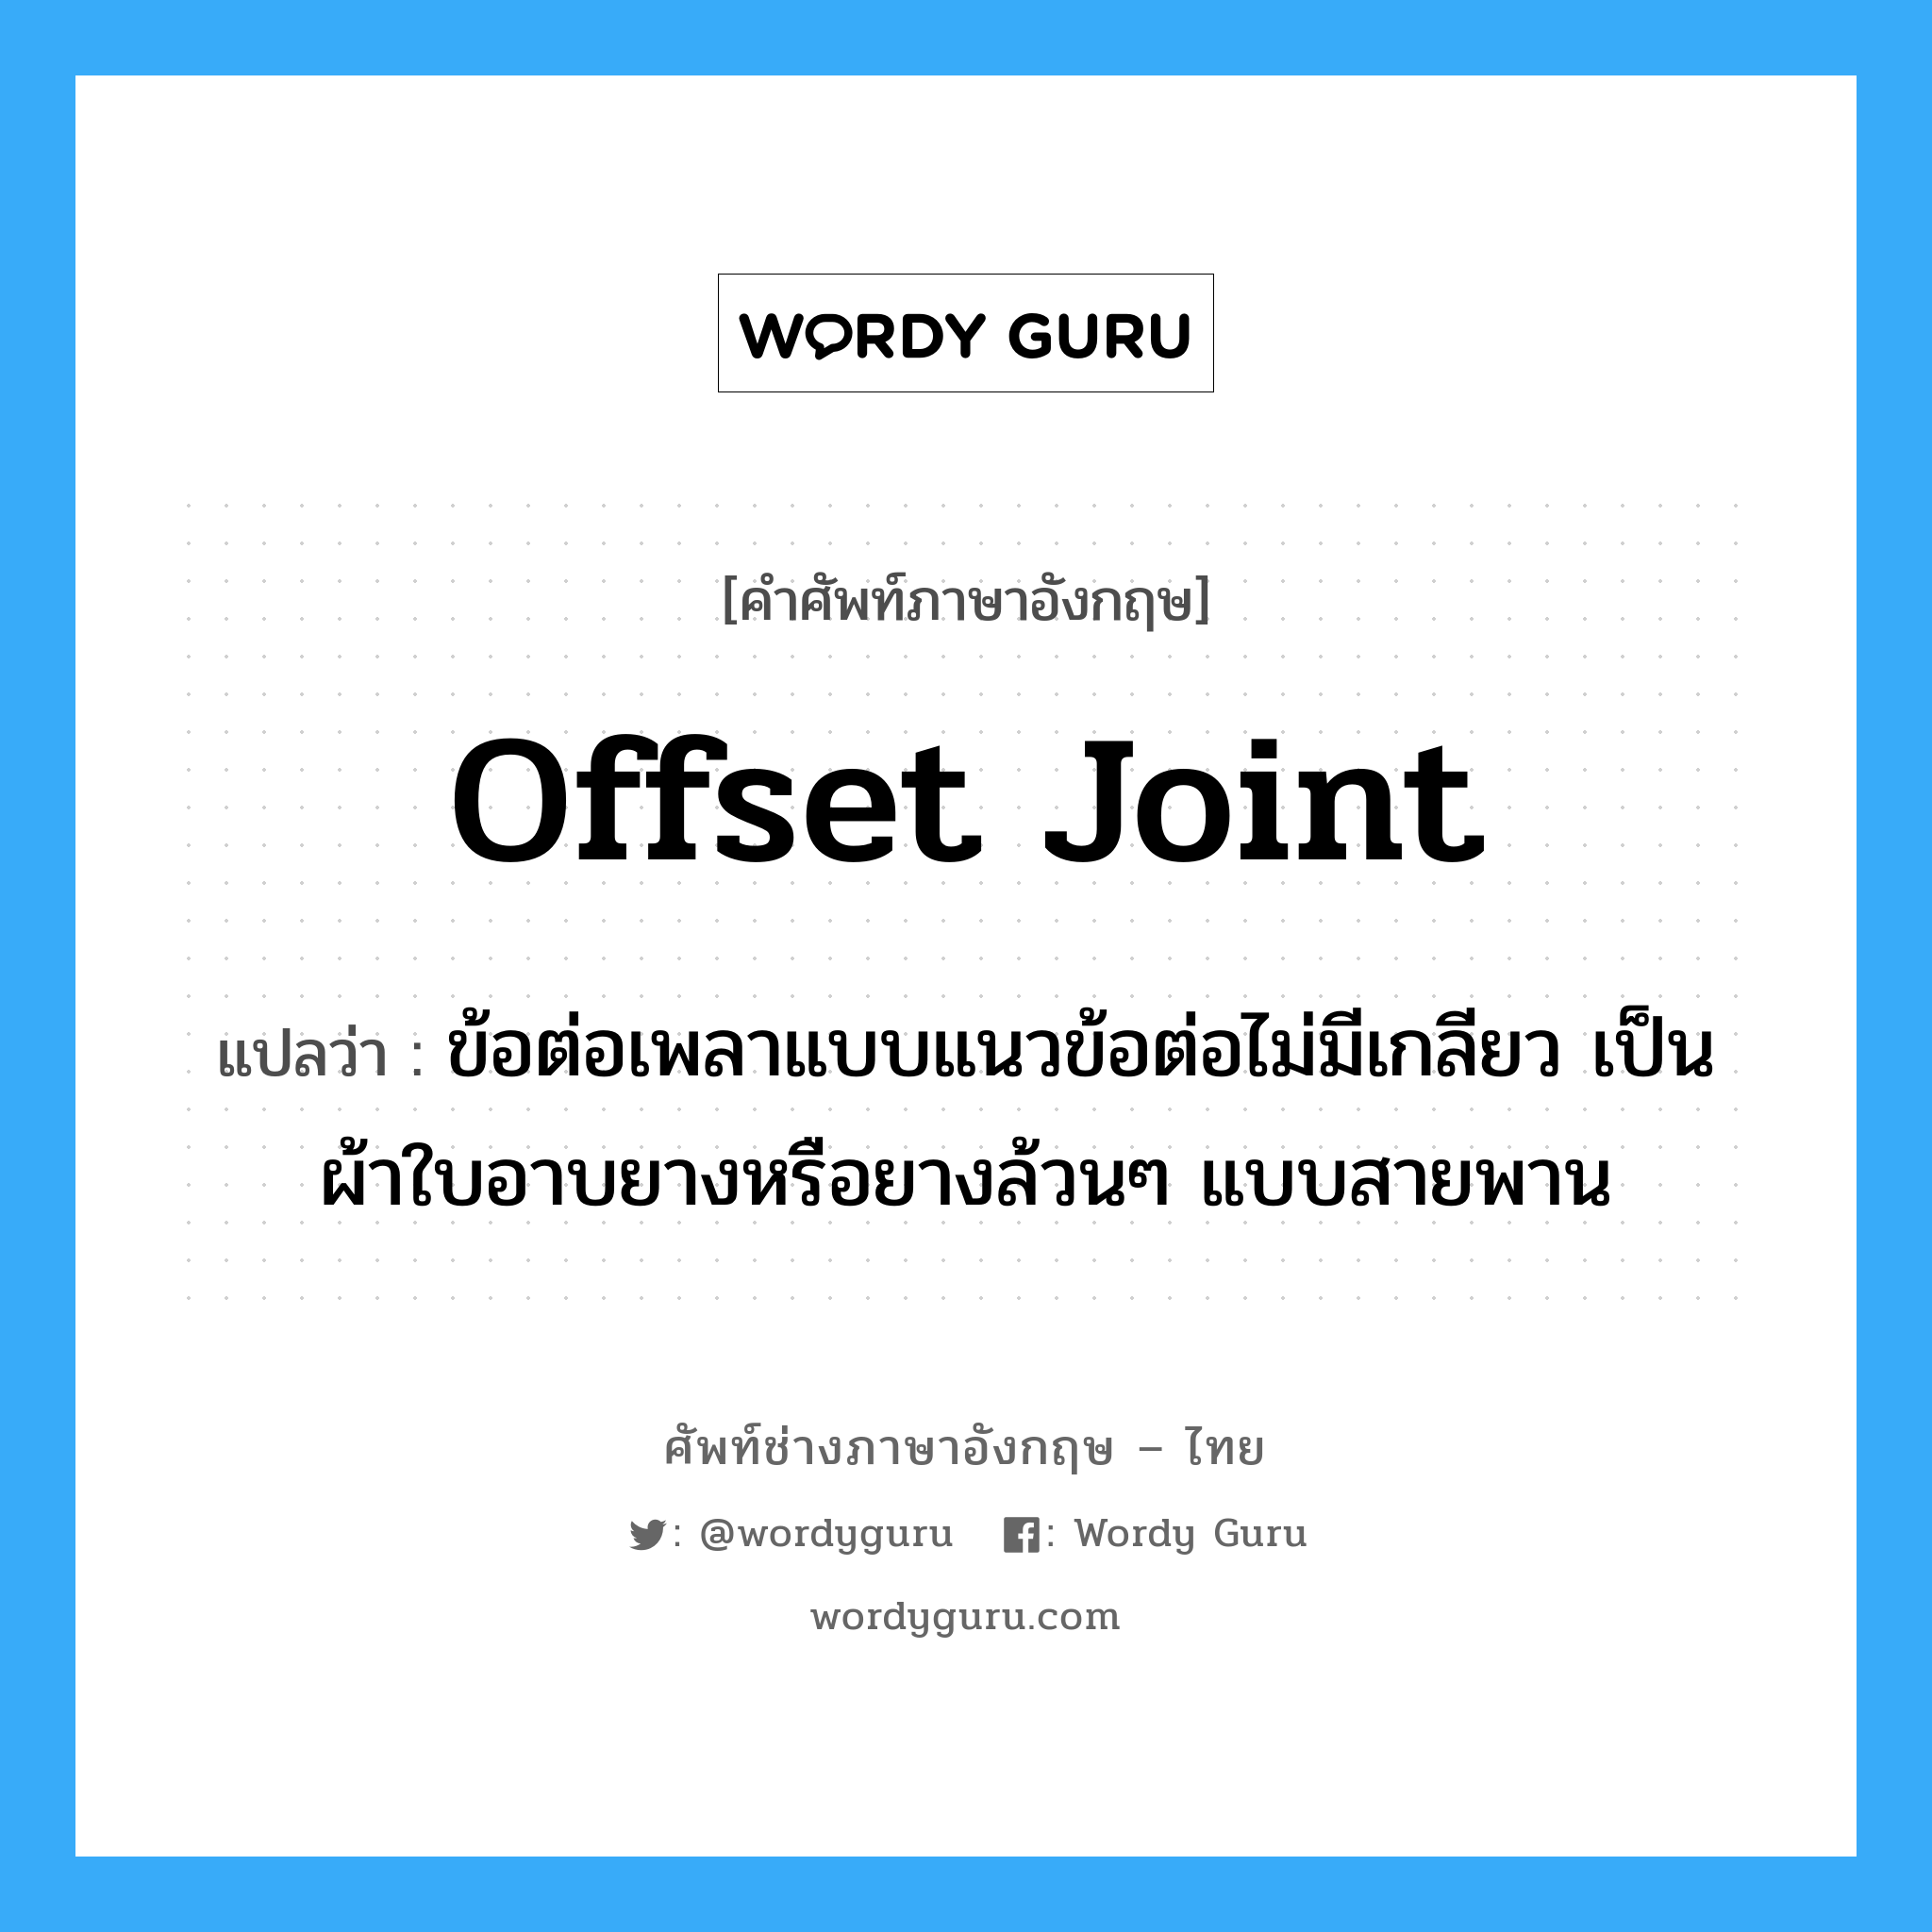 offset joint แปลว่า?, คำศัพท์ช่างภาษาอังกฤษ - ไทย offset joint คำศัพท์ภาษาอังกฤษ offset joint แปลว่า ข้อต่อเพลาแบบแนวข้อต่อไม่มีเกลียว เป็นผ้าใบอาบยางหรือยางล้วนๆ แบบสายพาน